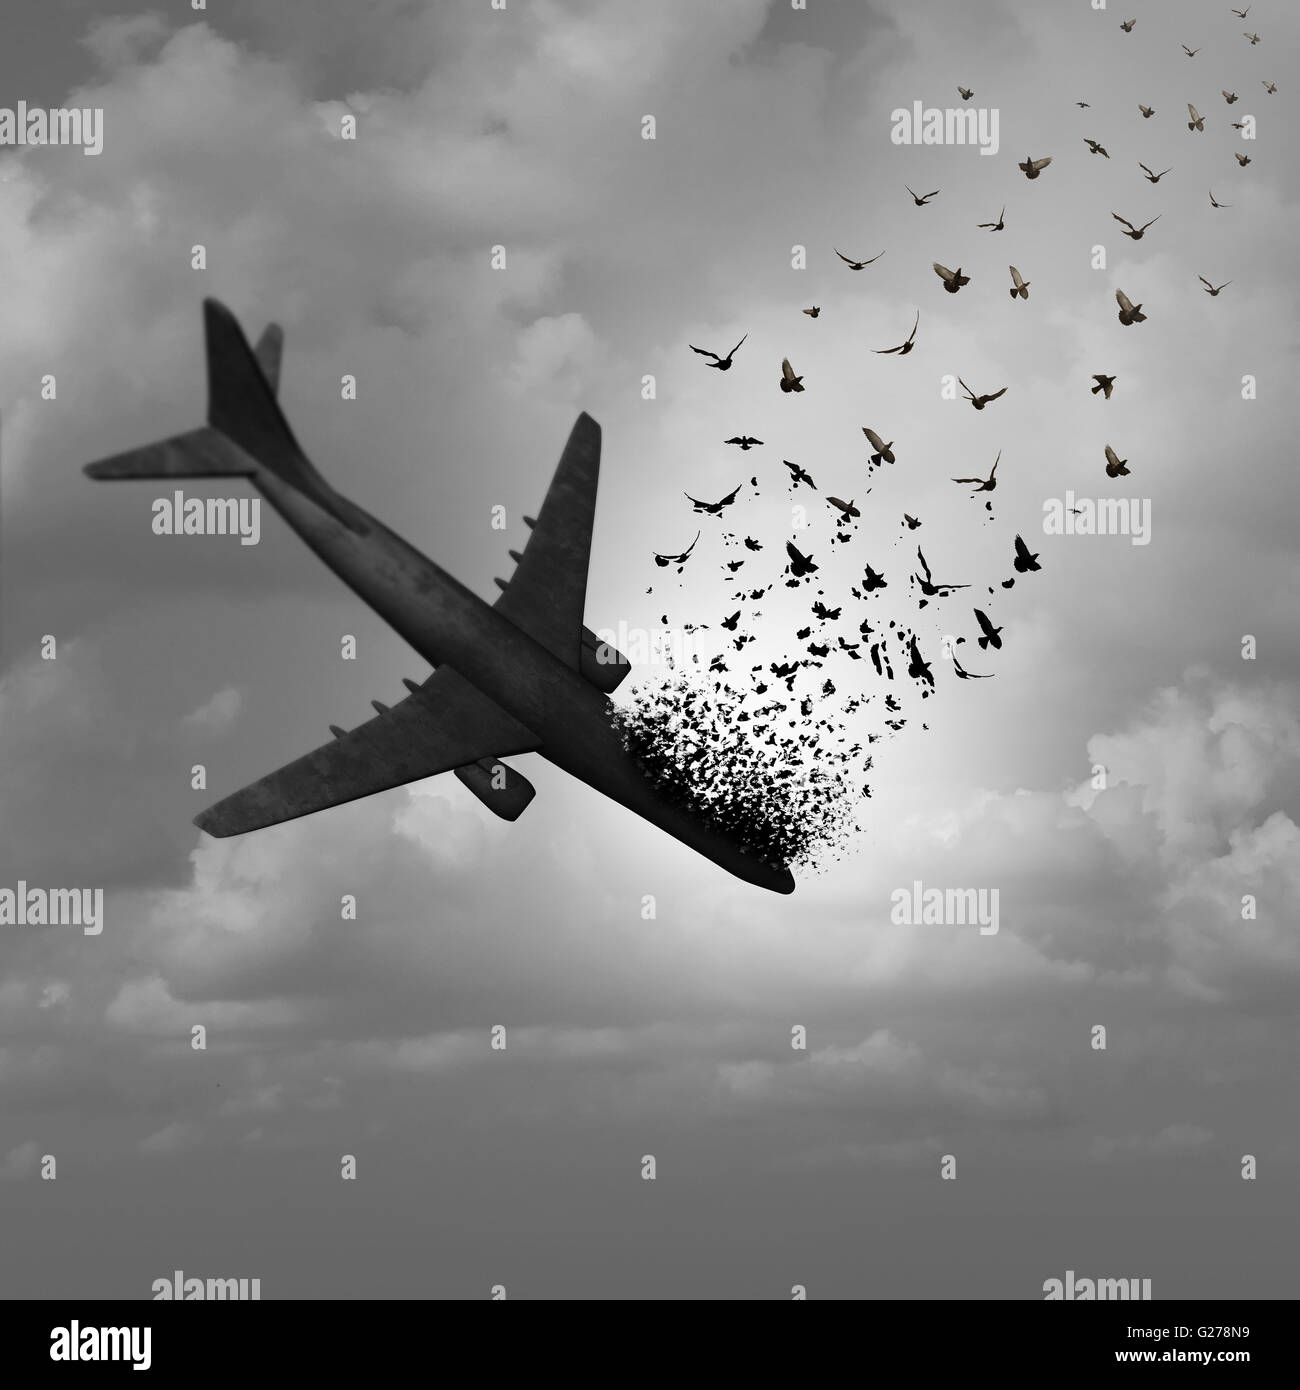 Desaparición de avión y falta concepto de vuelo como un avión estrellándose hundiendo desmoronándose en el cielo y tranforming en las aves que vuelan como una metáfora para la aviación tragedia con elementos de ilustración 3D. Foto de stock